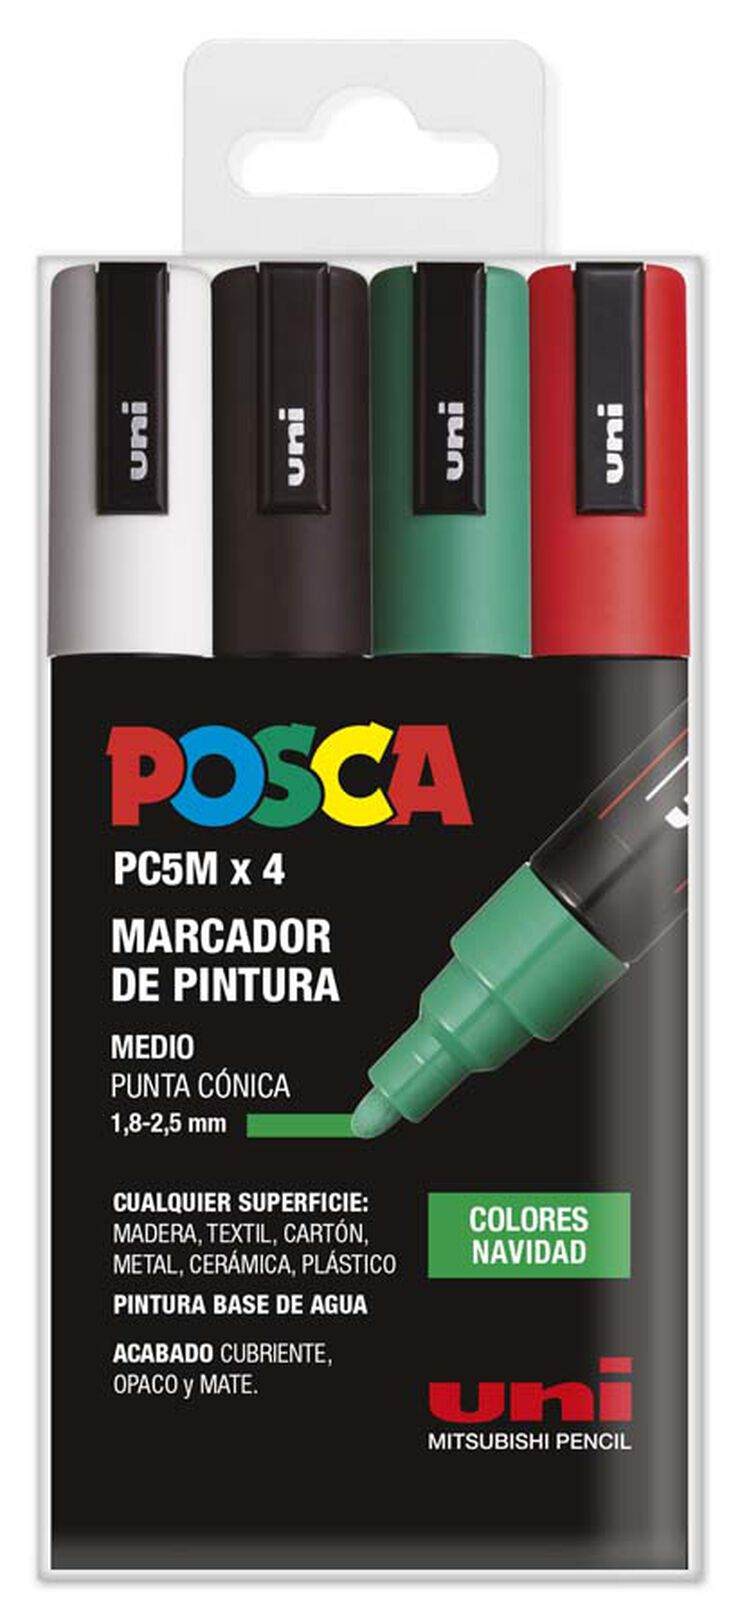 Marcadors Posca PC-5M nadal 4 colors